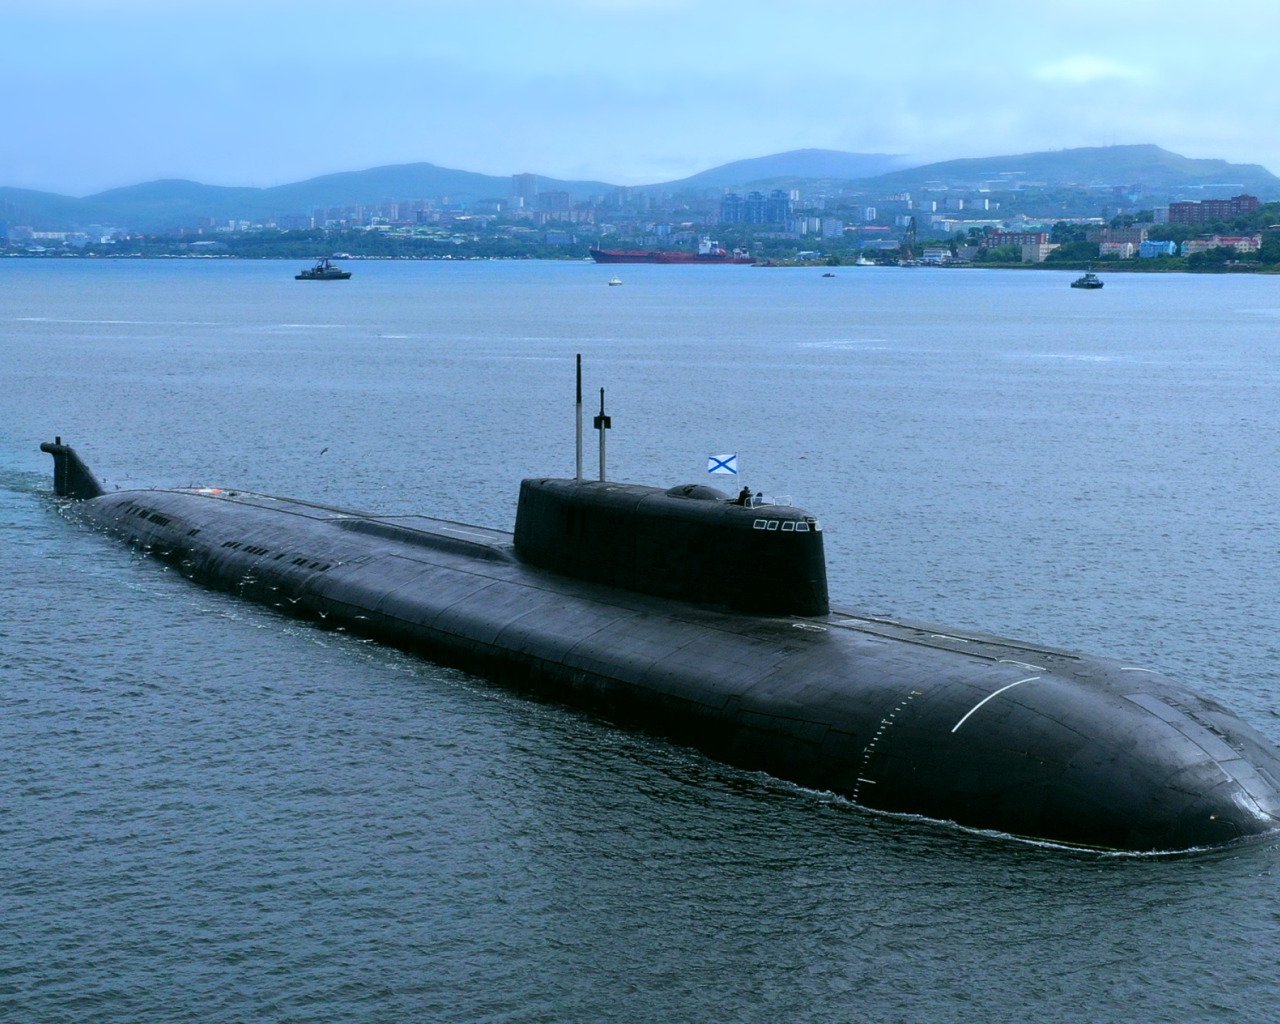 Подводная лодка тихоокеанского флота. Подводные лодки проекта 945а «Кондор». Подводные лодки проекта 949а «Антей». АПЛ проекта 949а («Антей») «Иркутск». Подводные лодки проекта 955 «Борей».